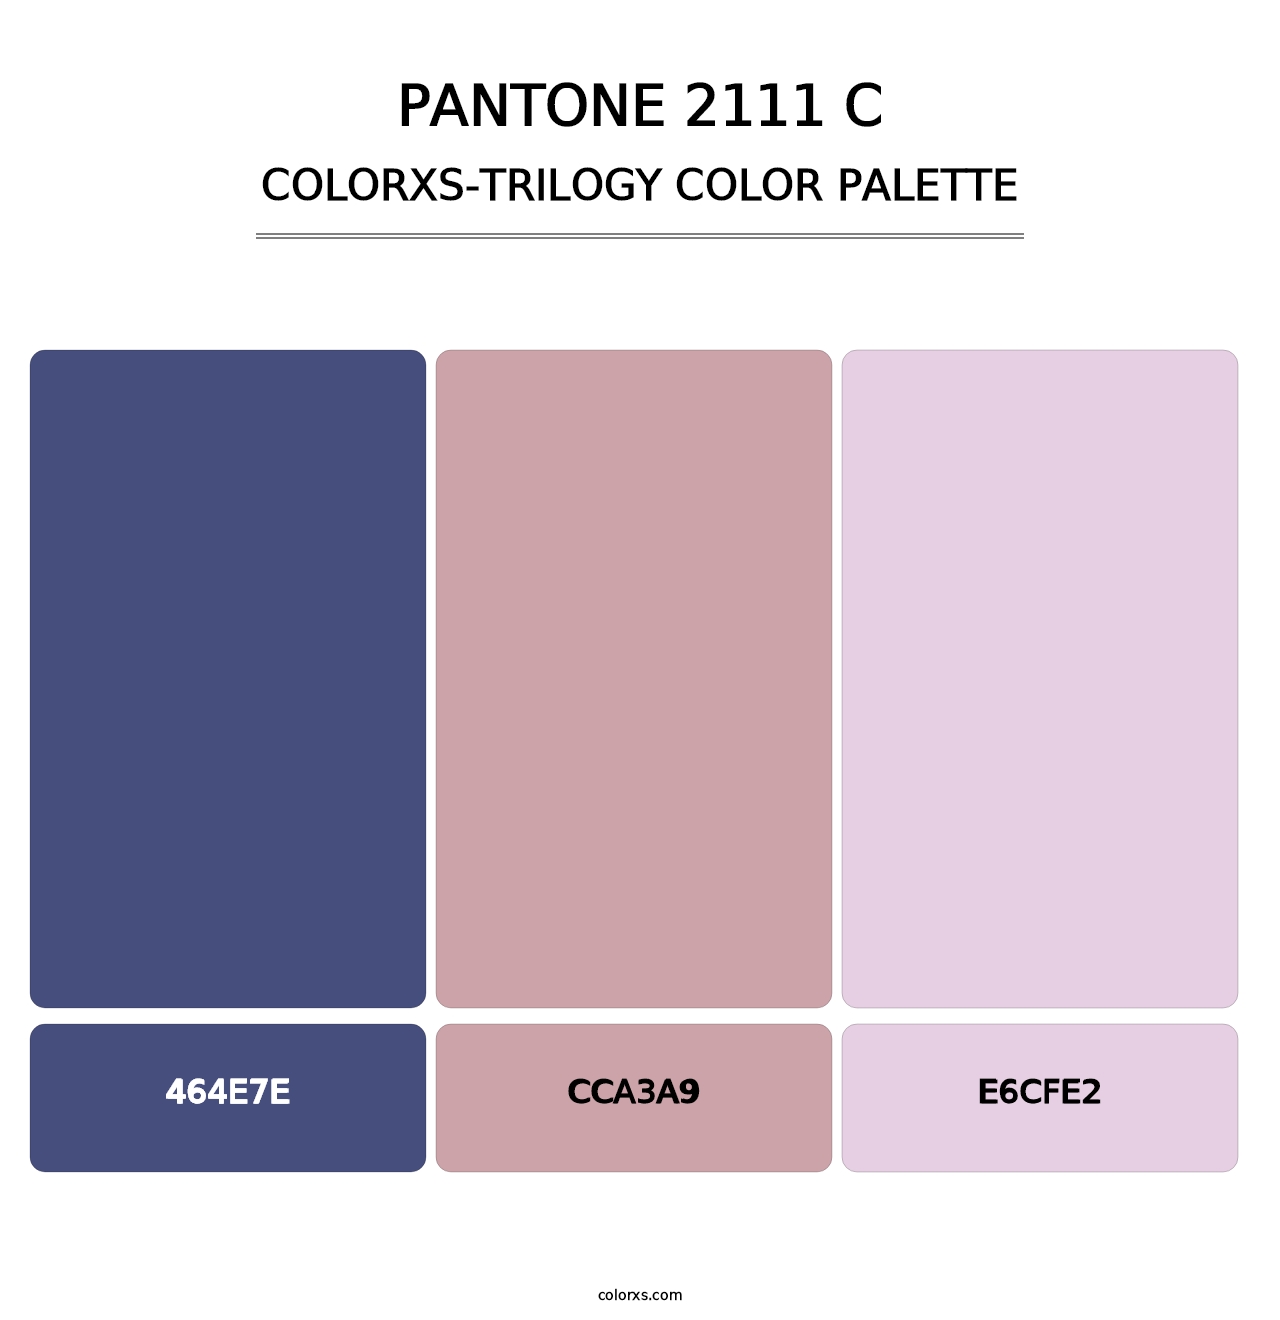 PANTONE 2111 C - Colorxs Trilogy Palette